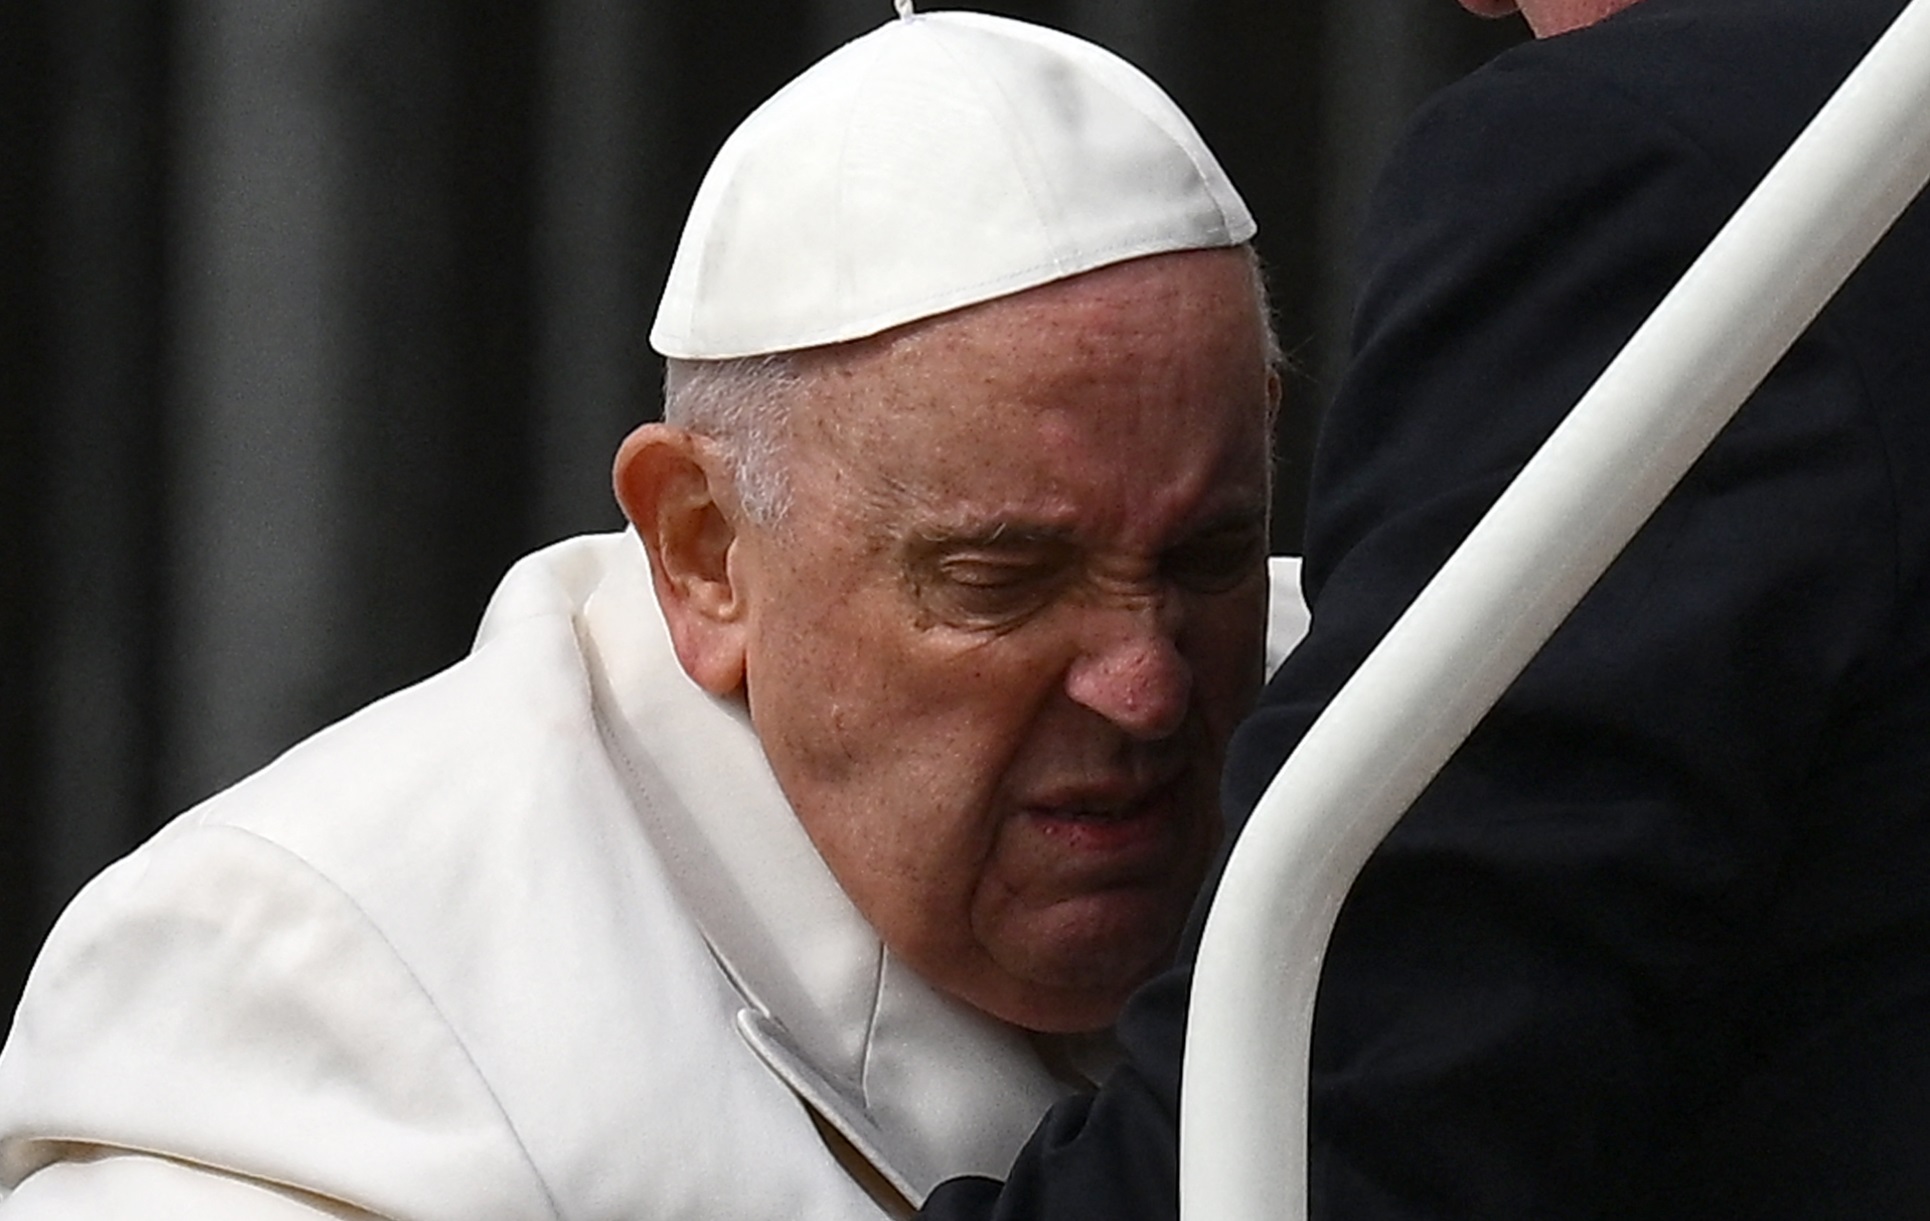 La IMAGEN que expone el dolor del papa Francisco antes de ser hospitalizado